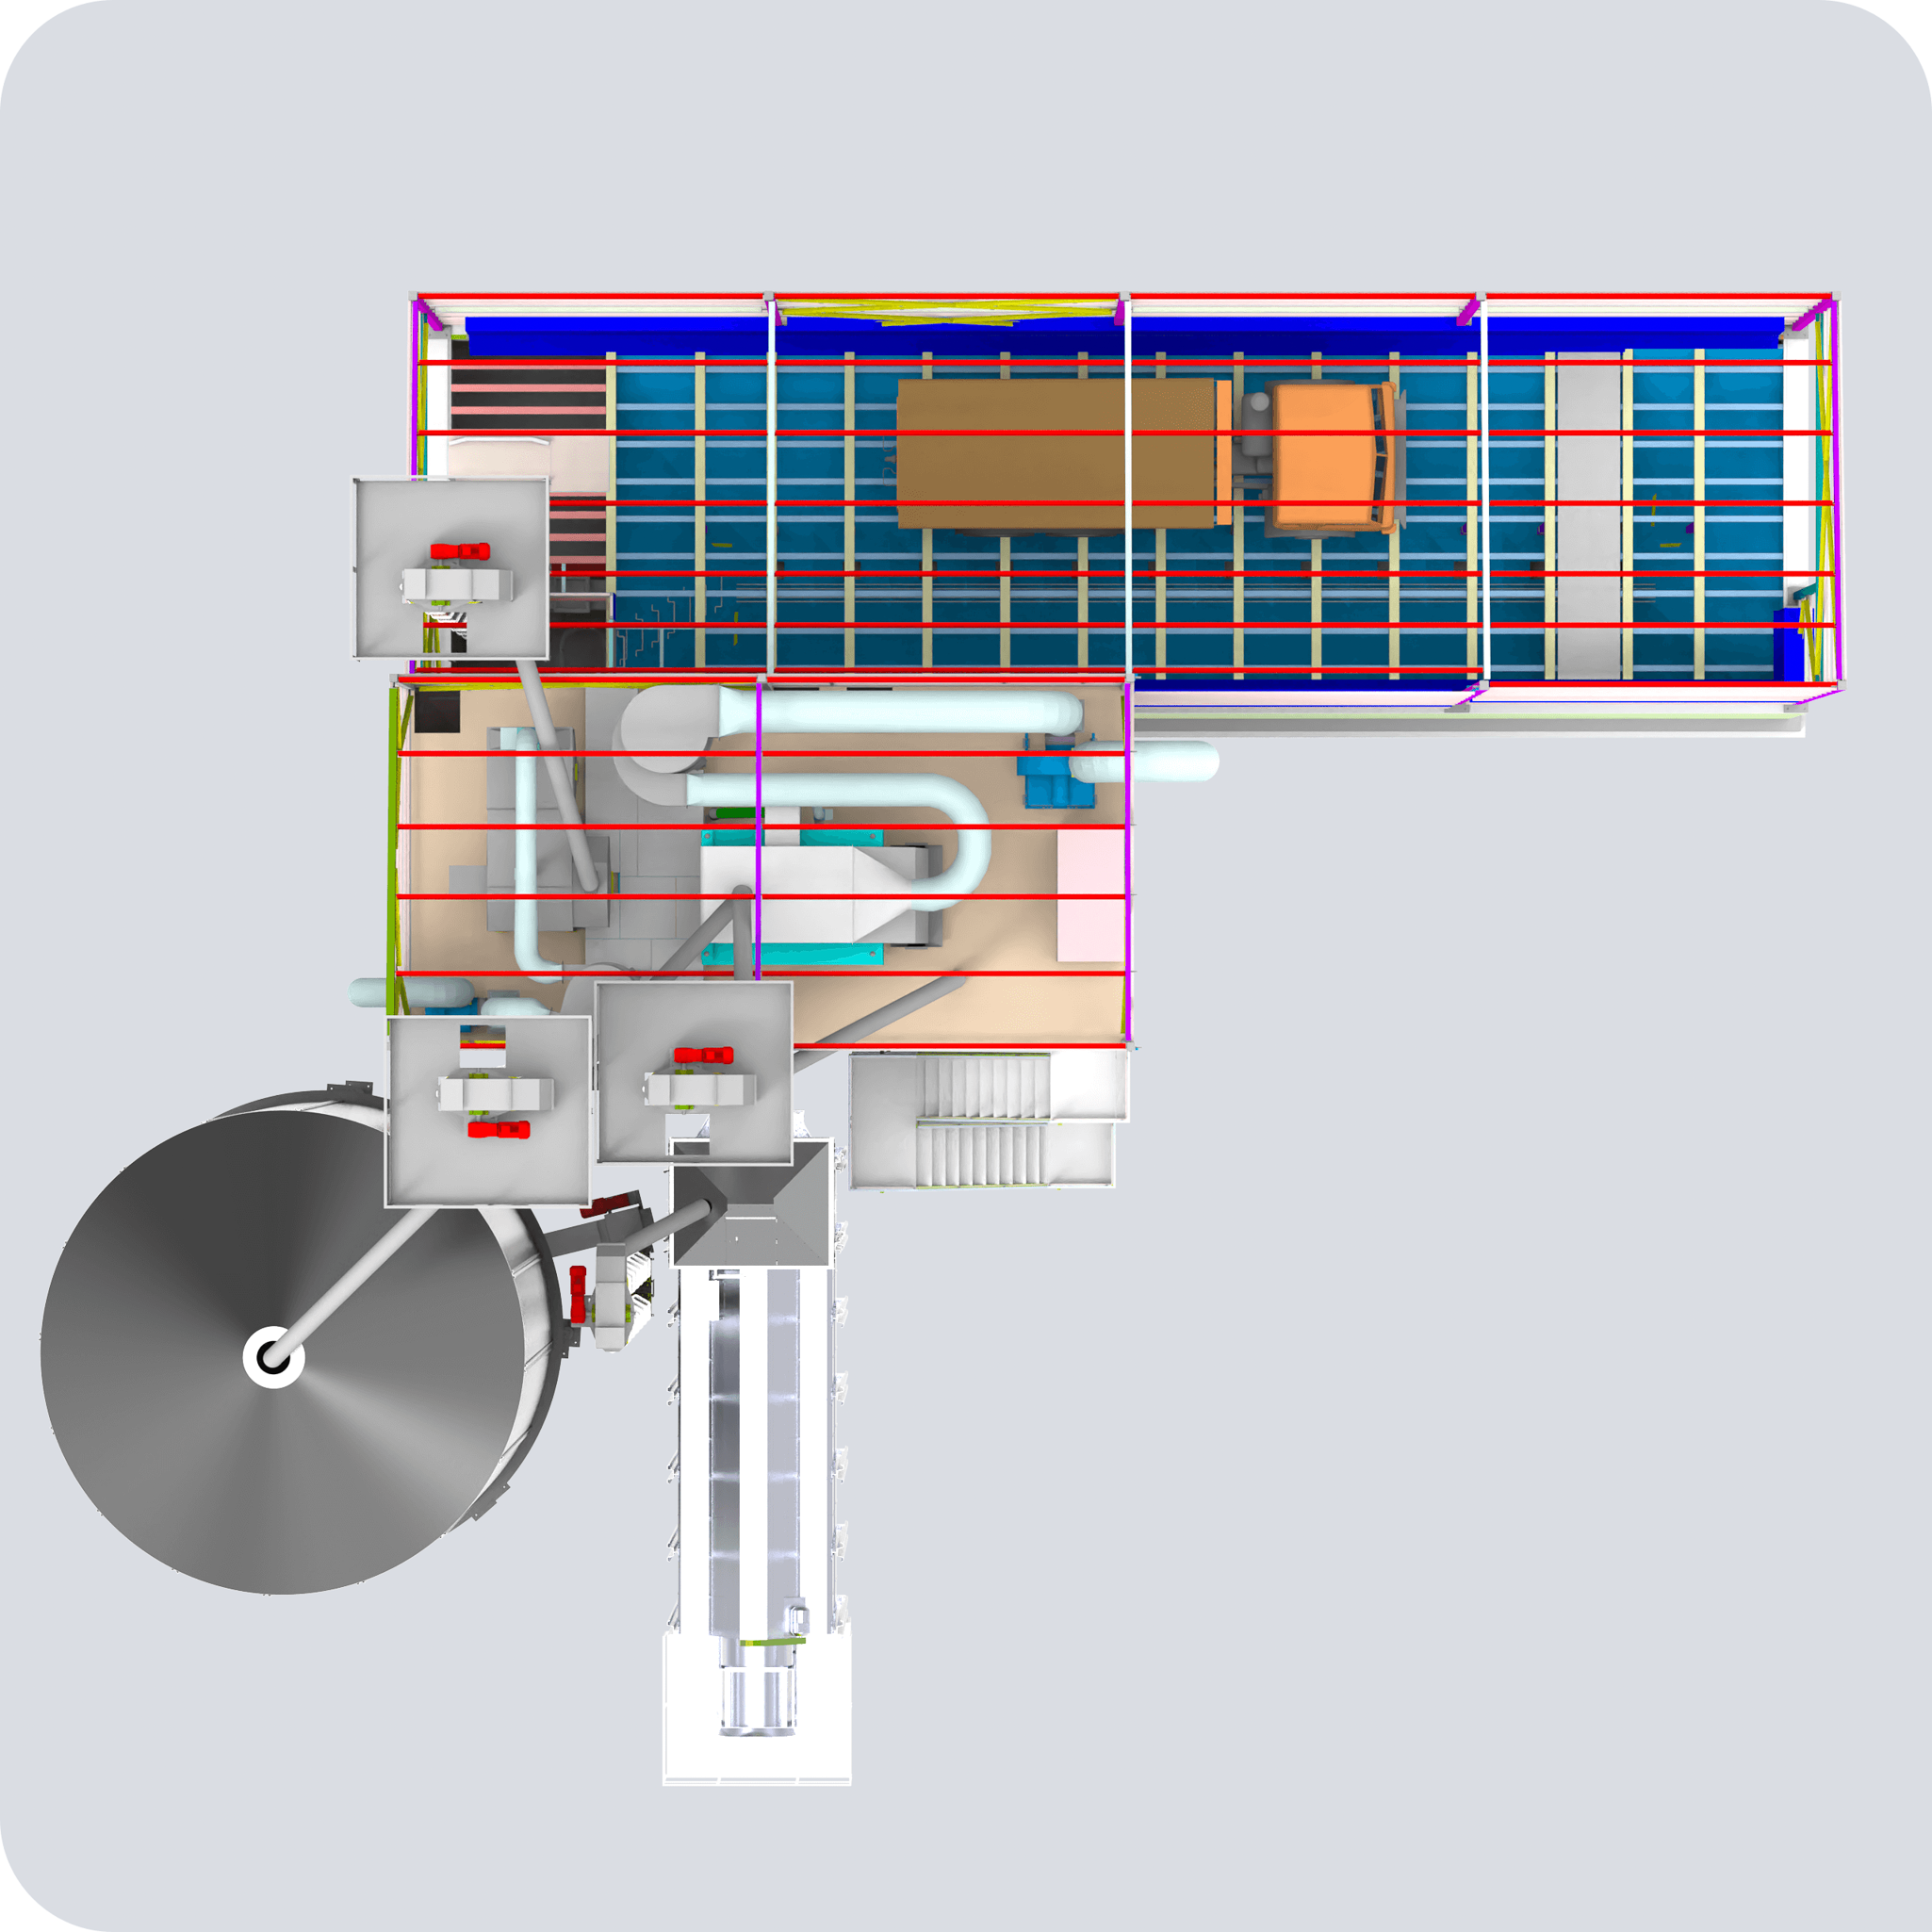 Модуль 80.12 Завальная яма механизированная, отделение зерноочистки, сушилка, оперативная ёмкость (вид сверху)